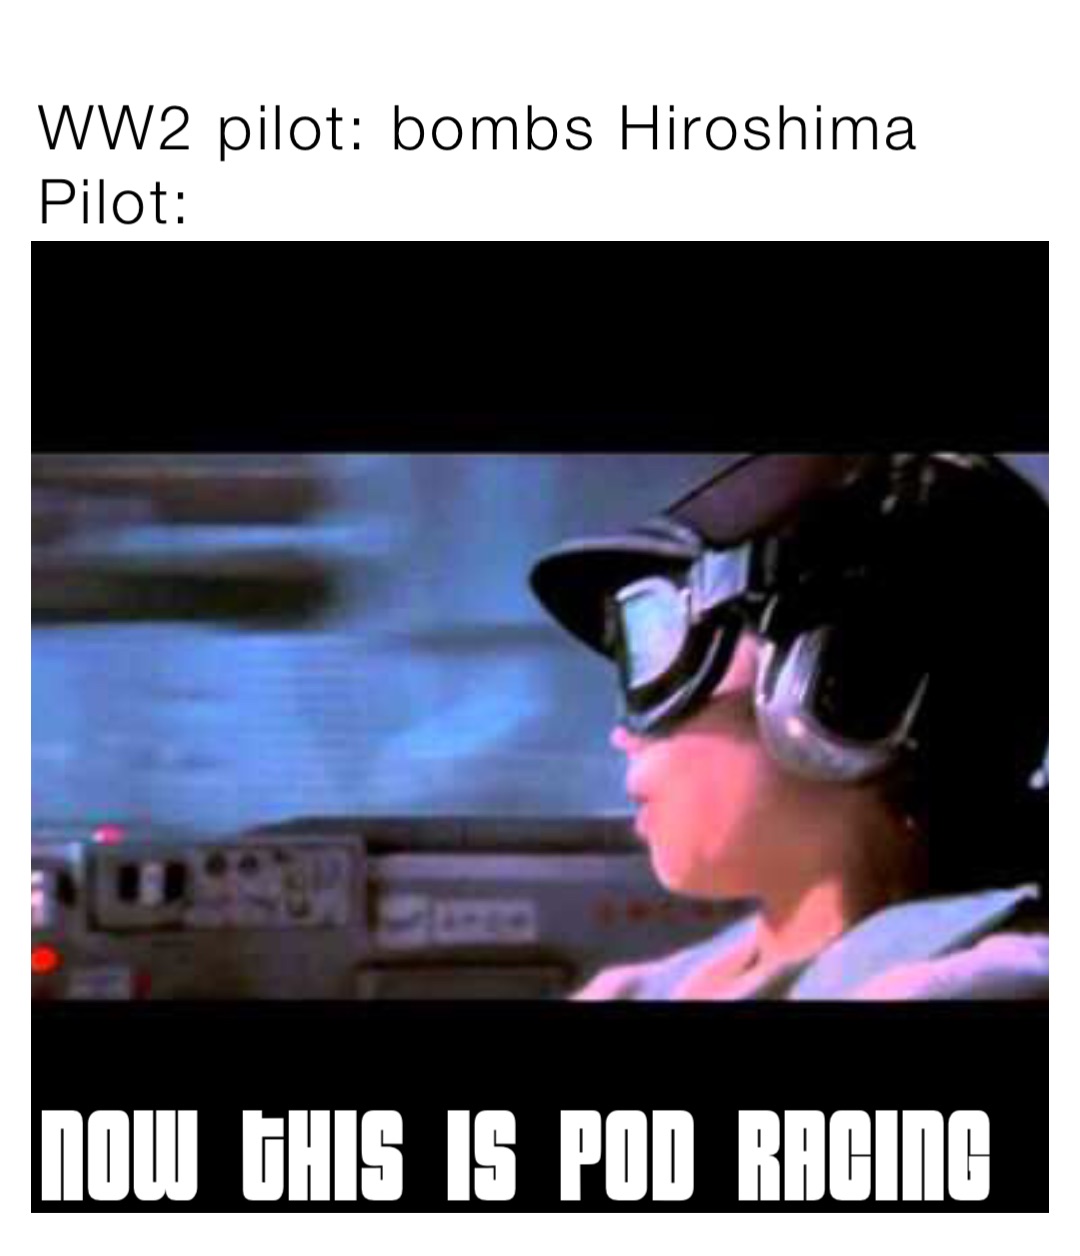 WW2 pilot: bombs Hiroshima
Pilot: Now this is pod racing